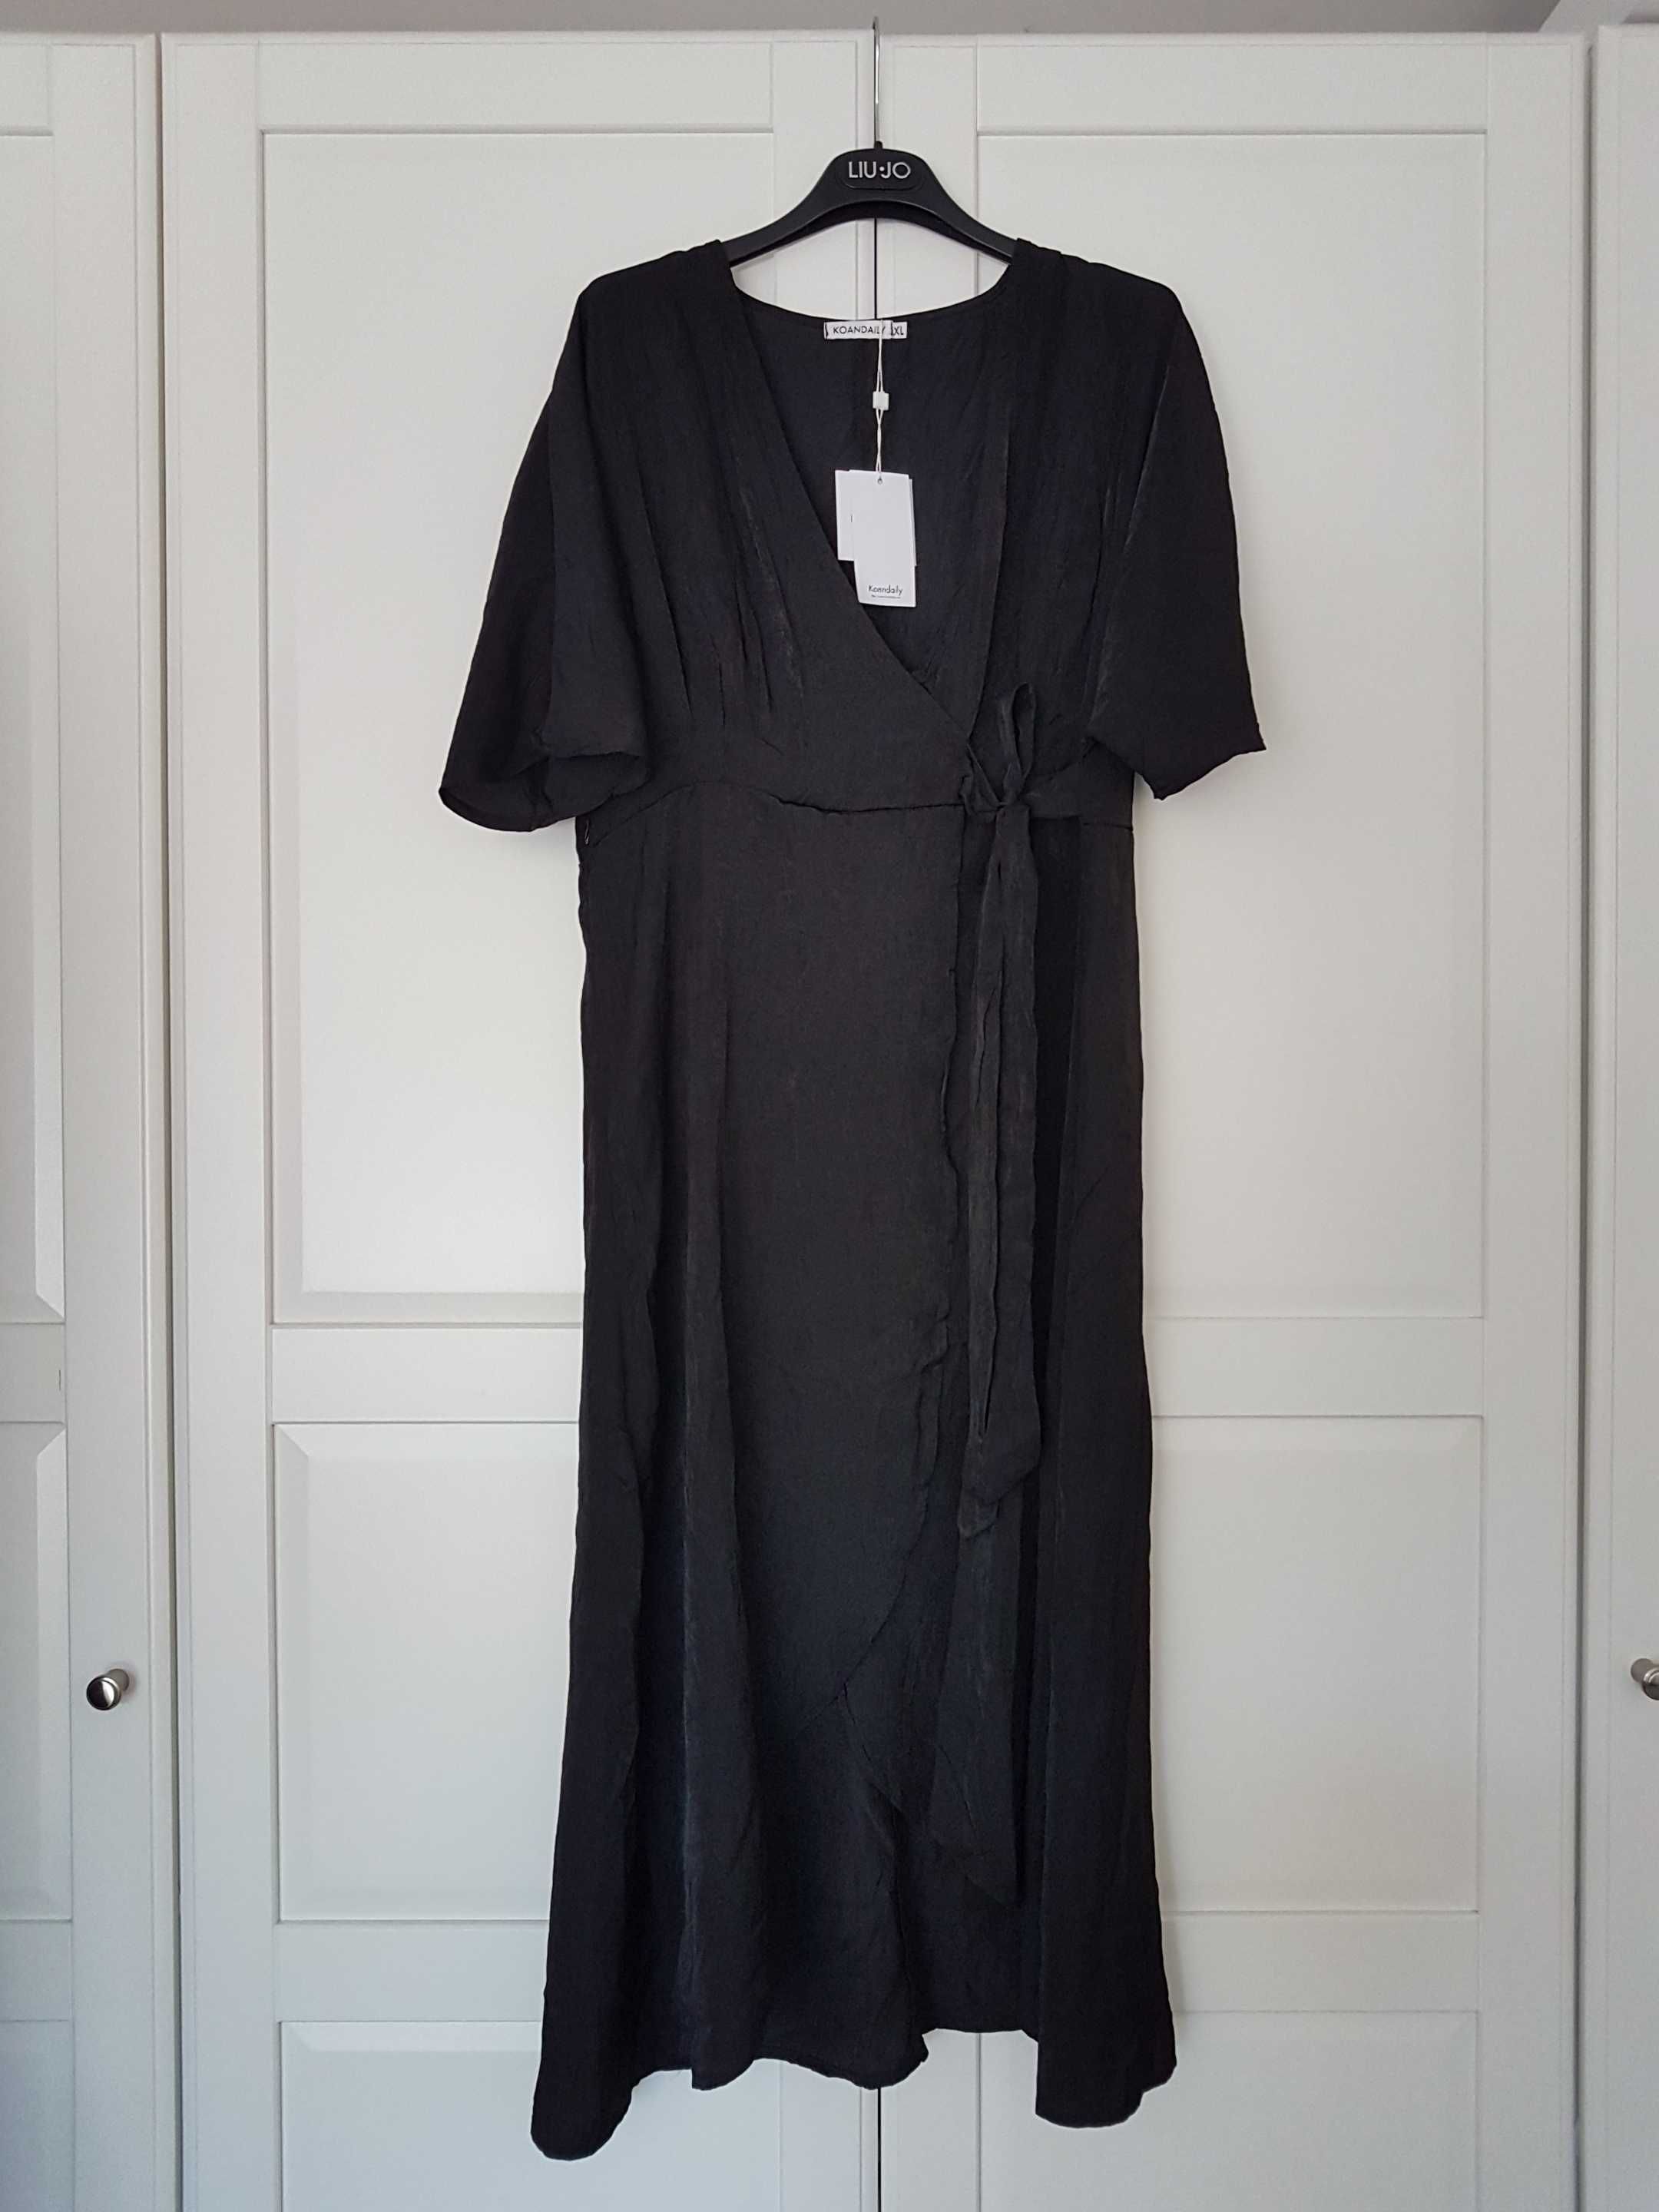 KOANDAILY nowa czarna sukienka z połyskiem na zakładkę roz. XL